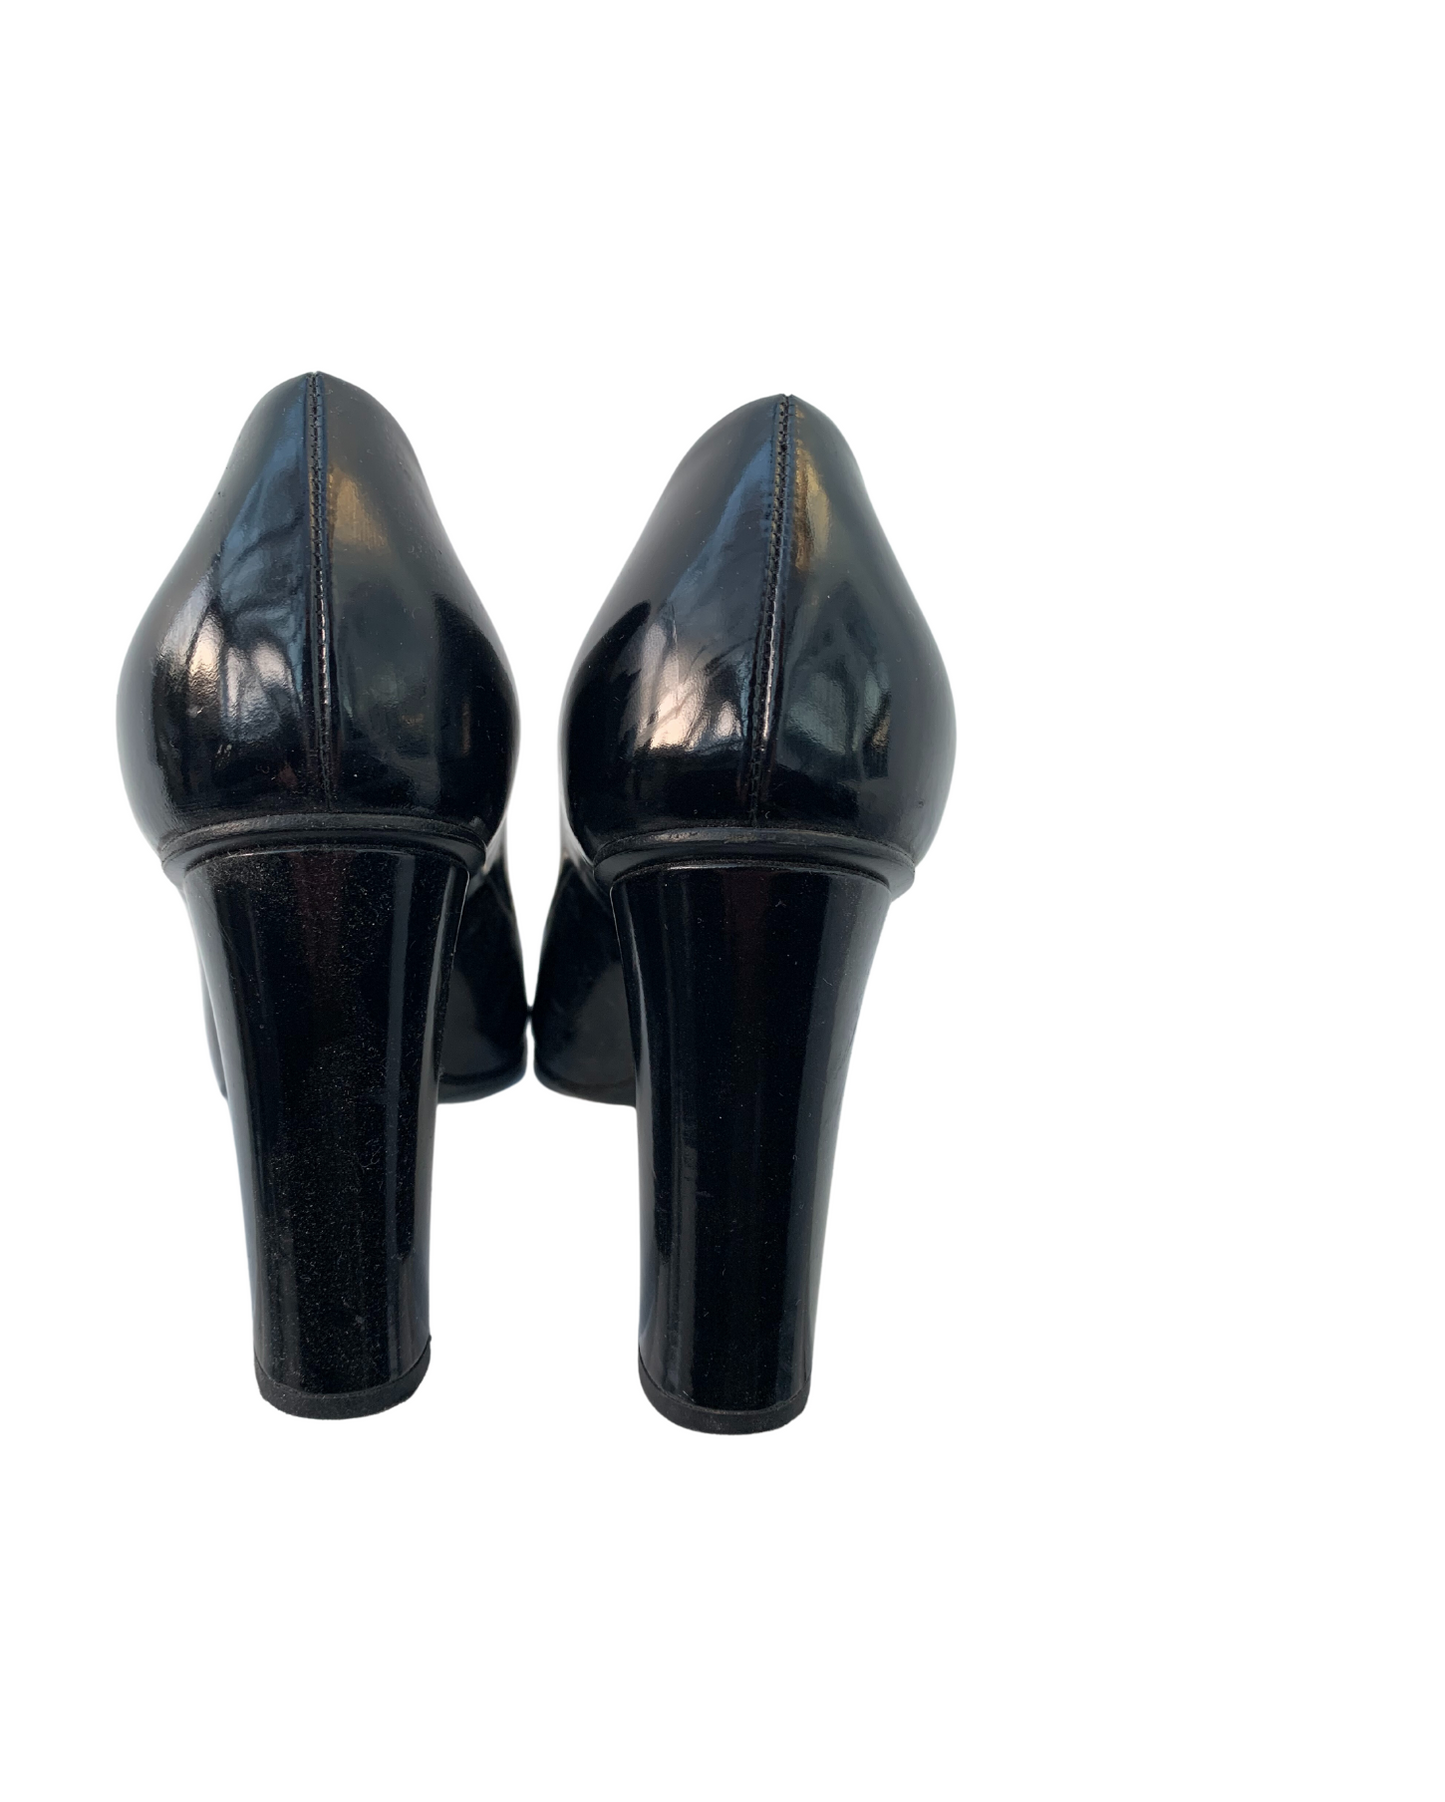 SALE - Black Horsebit Heels ~ Size 4